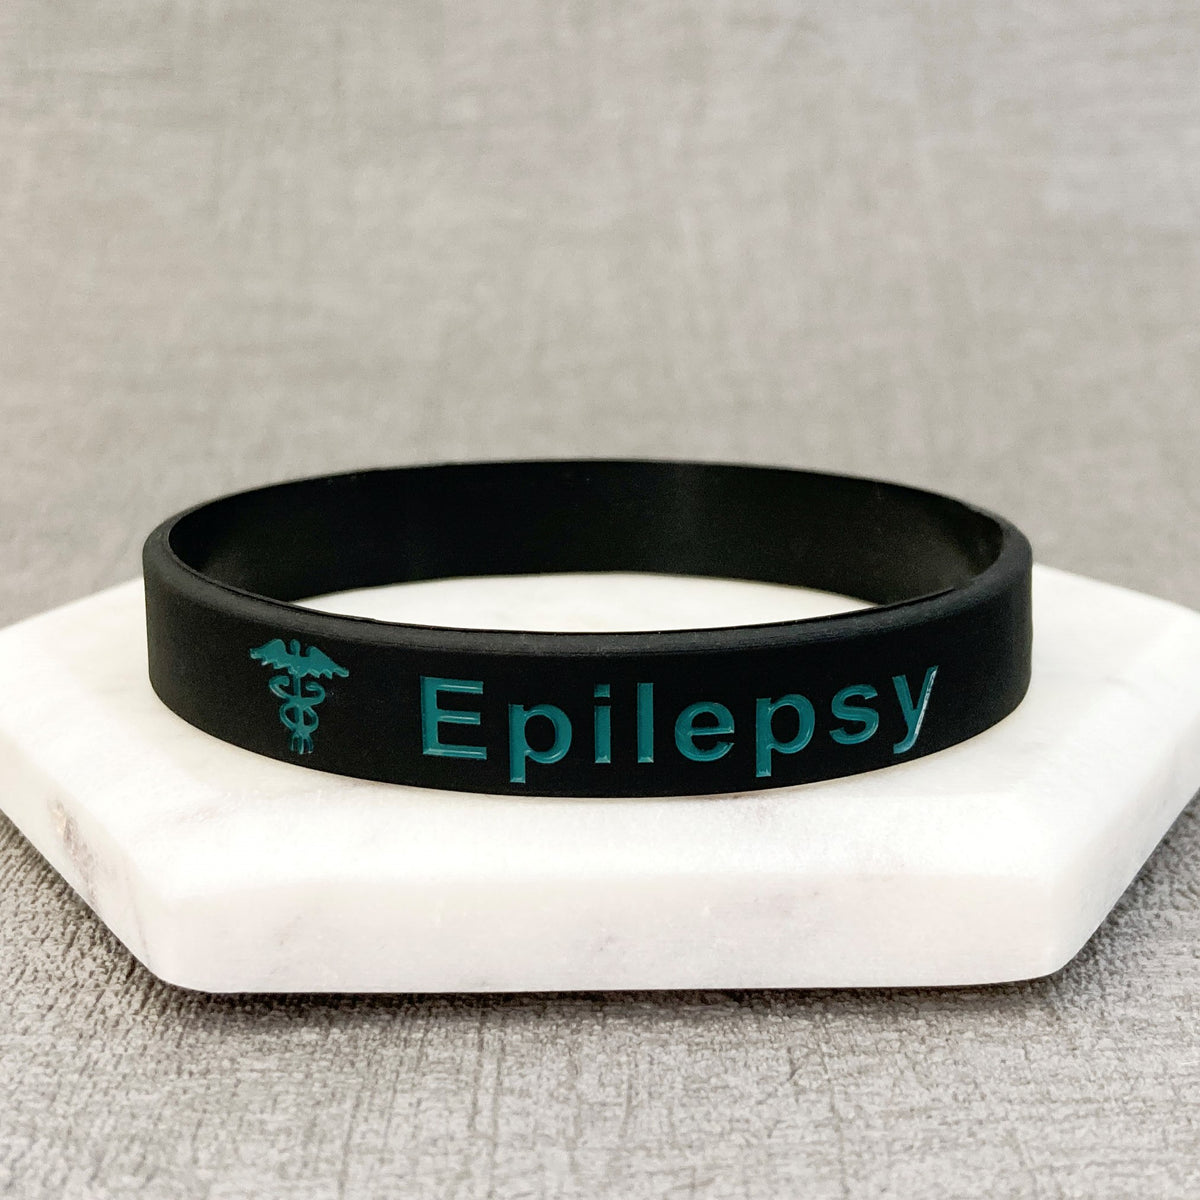 epilepsy unisex wristband teal black sports